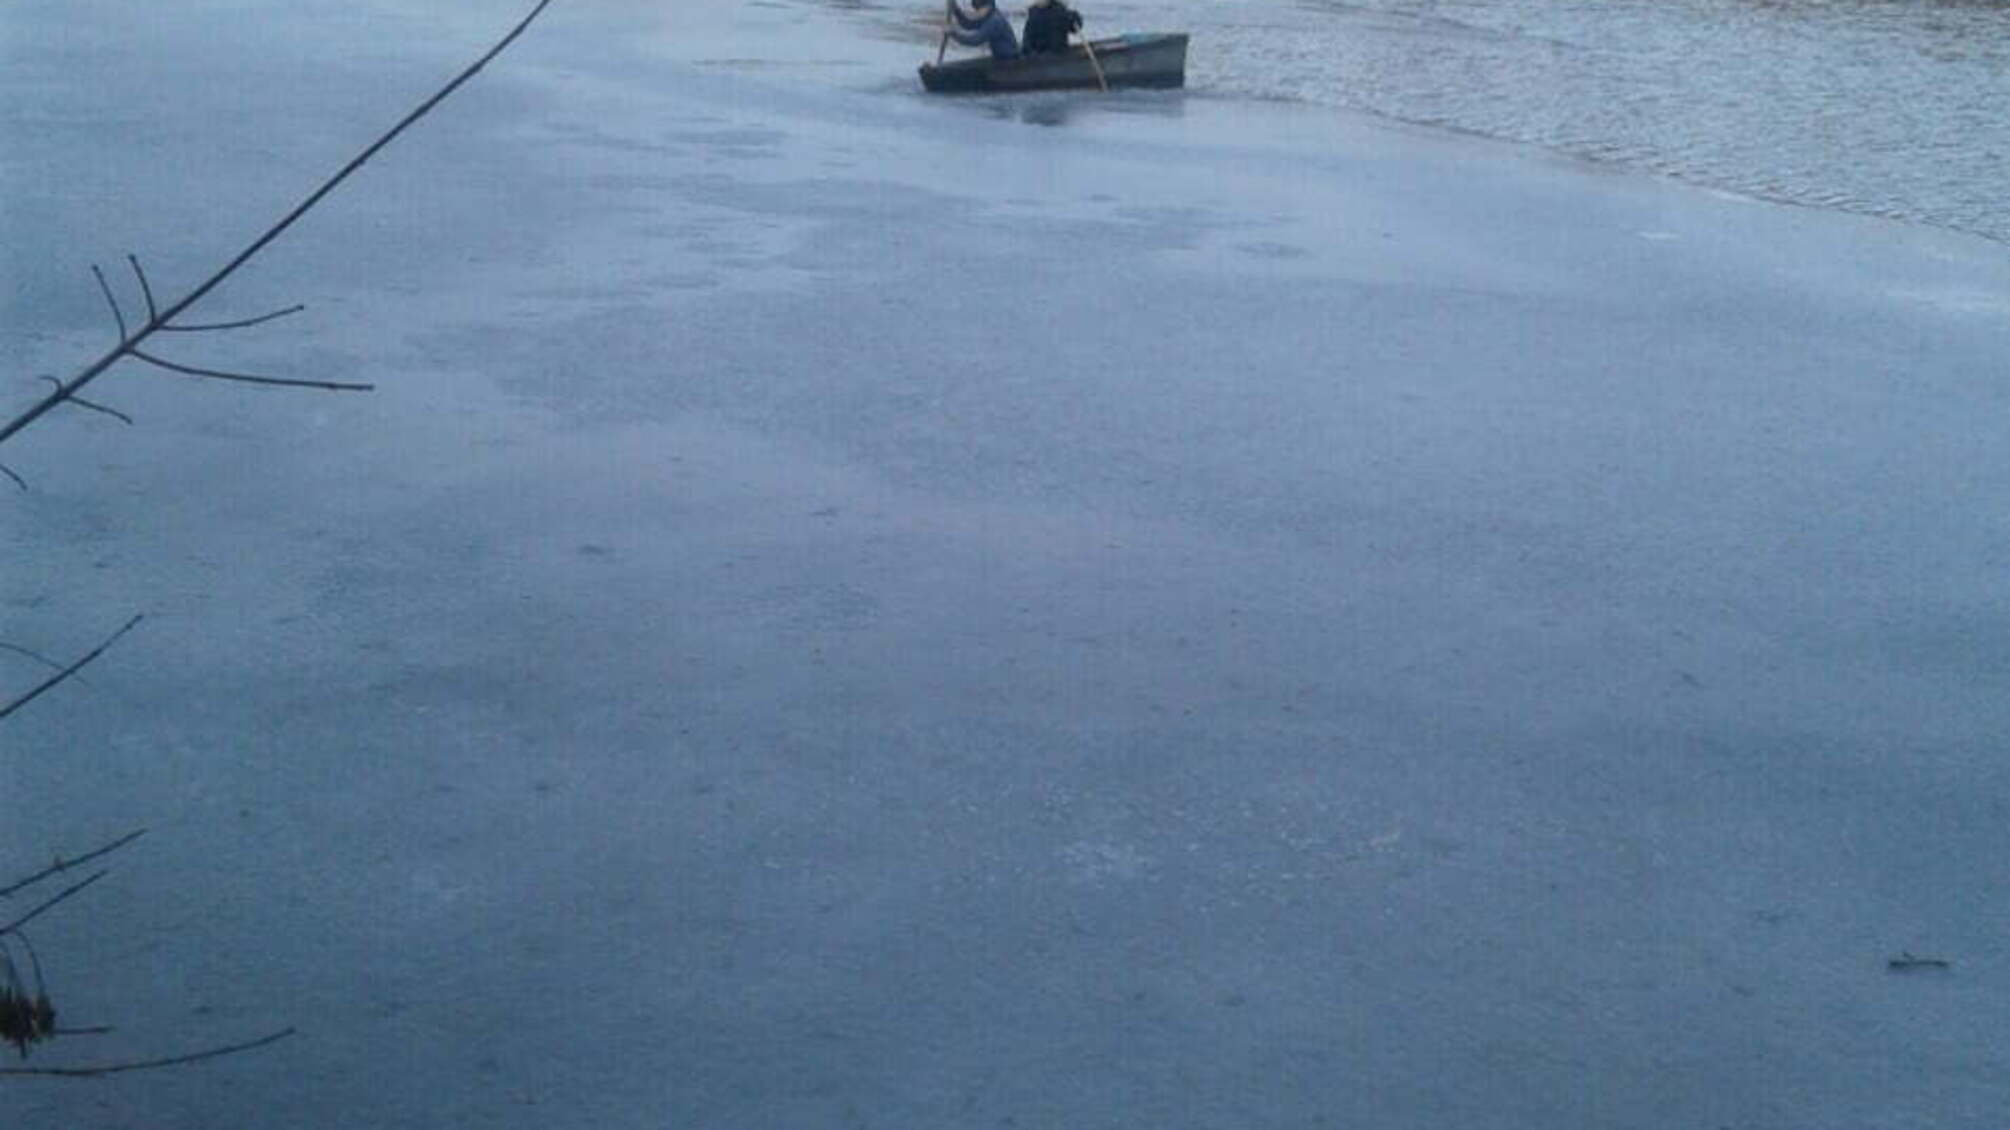 Житомирська область: фахівці ДСНС врятували на річці двох дітей, які, перебуваючи у човні, не могли самостійно потрапити на берег